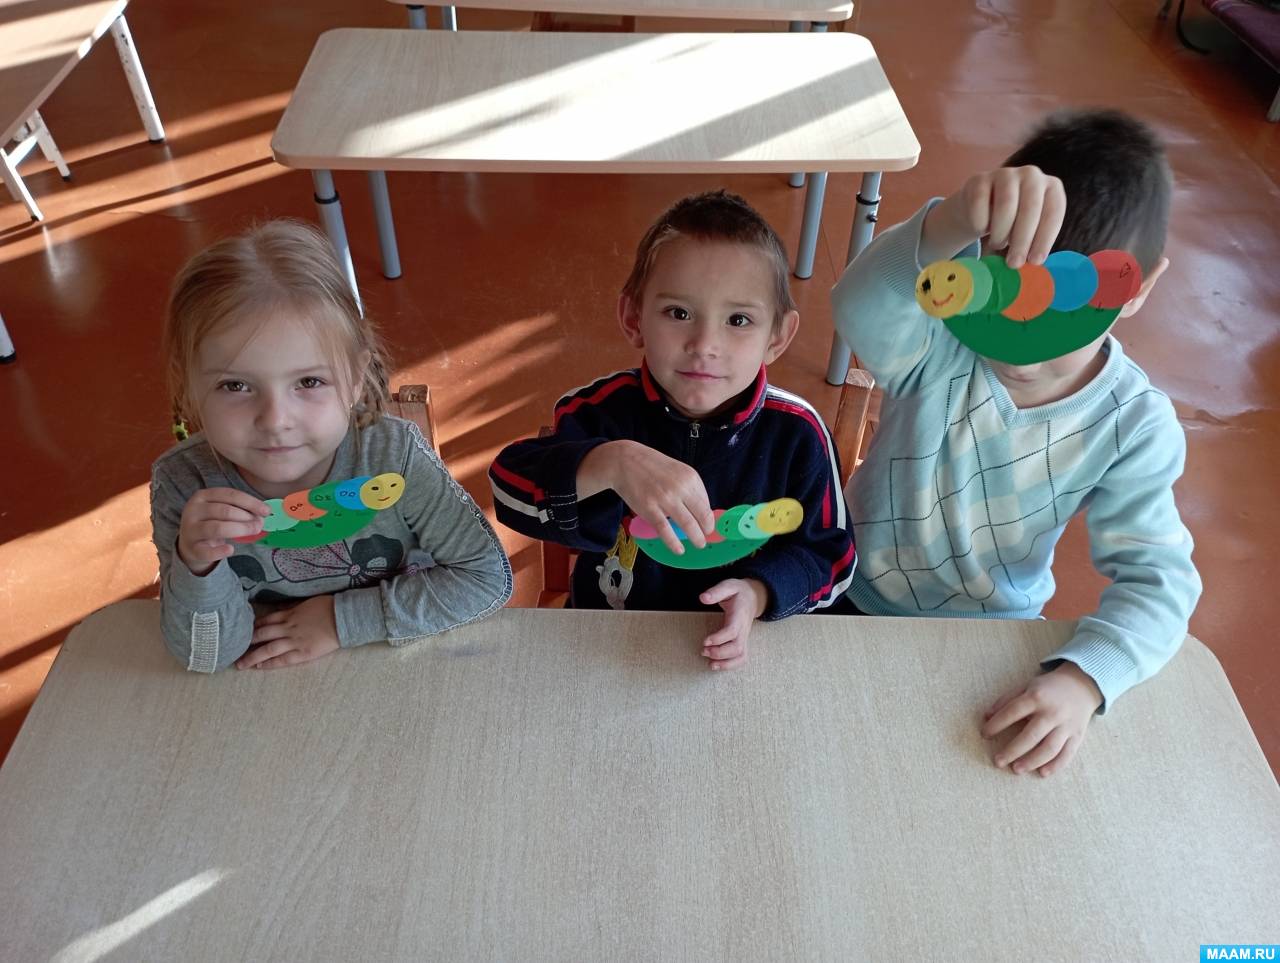 Детское счастье - игрушки - Страница 6 - Совместные покупки в Якутске